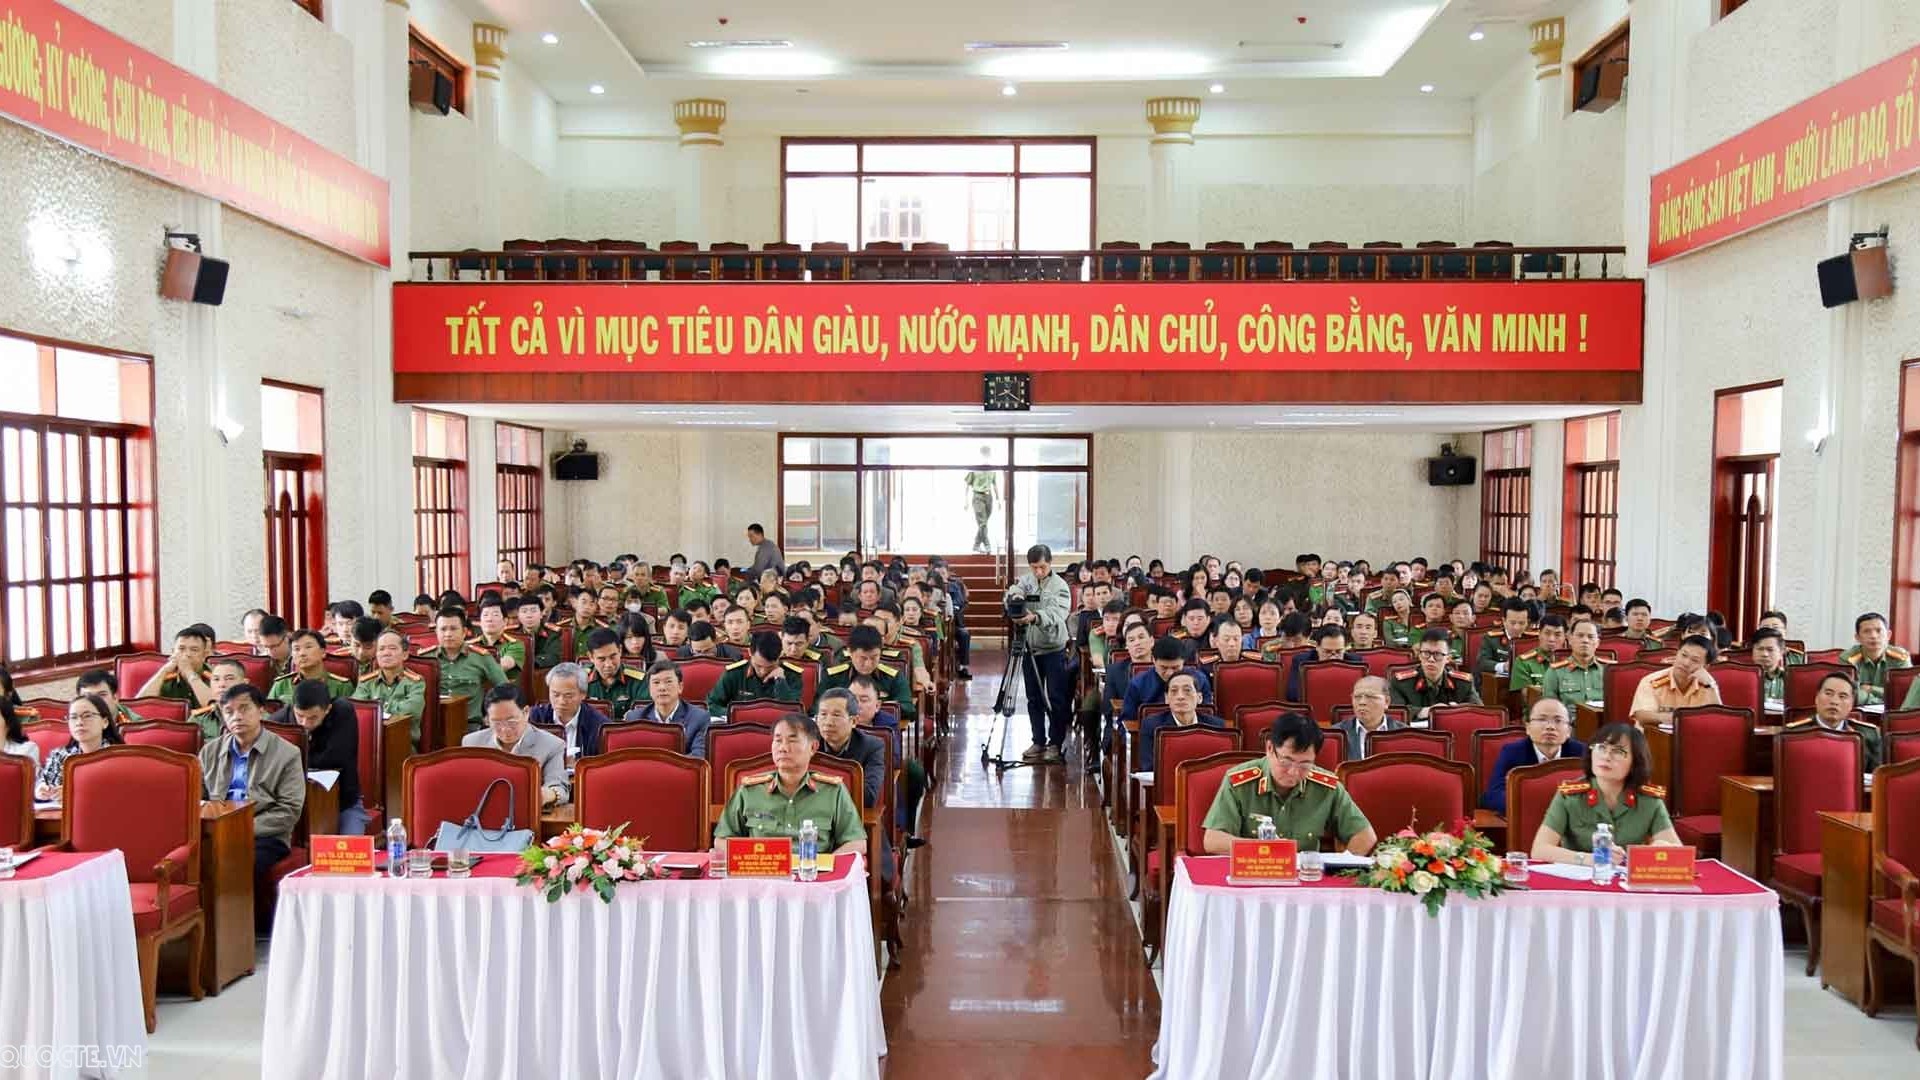 Lâm Đồng tổ chức Hội nghị tập huấn công tác nhân quyền, tiếp tục bảo vệ, thúc đẩy quyền con người